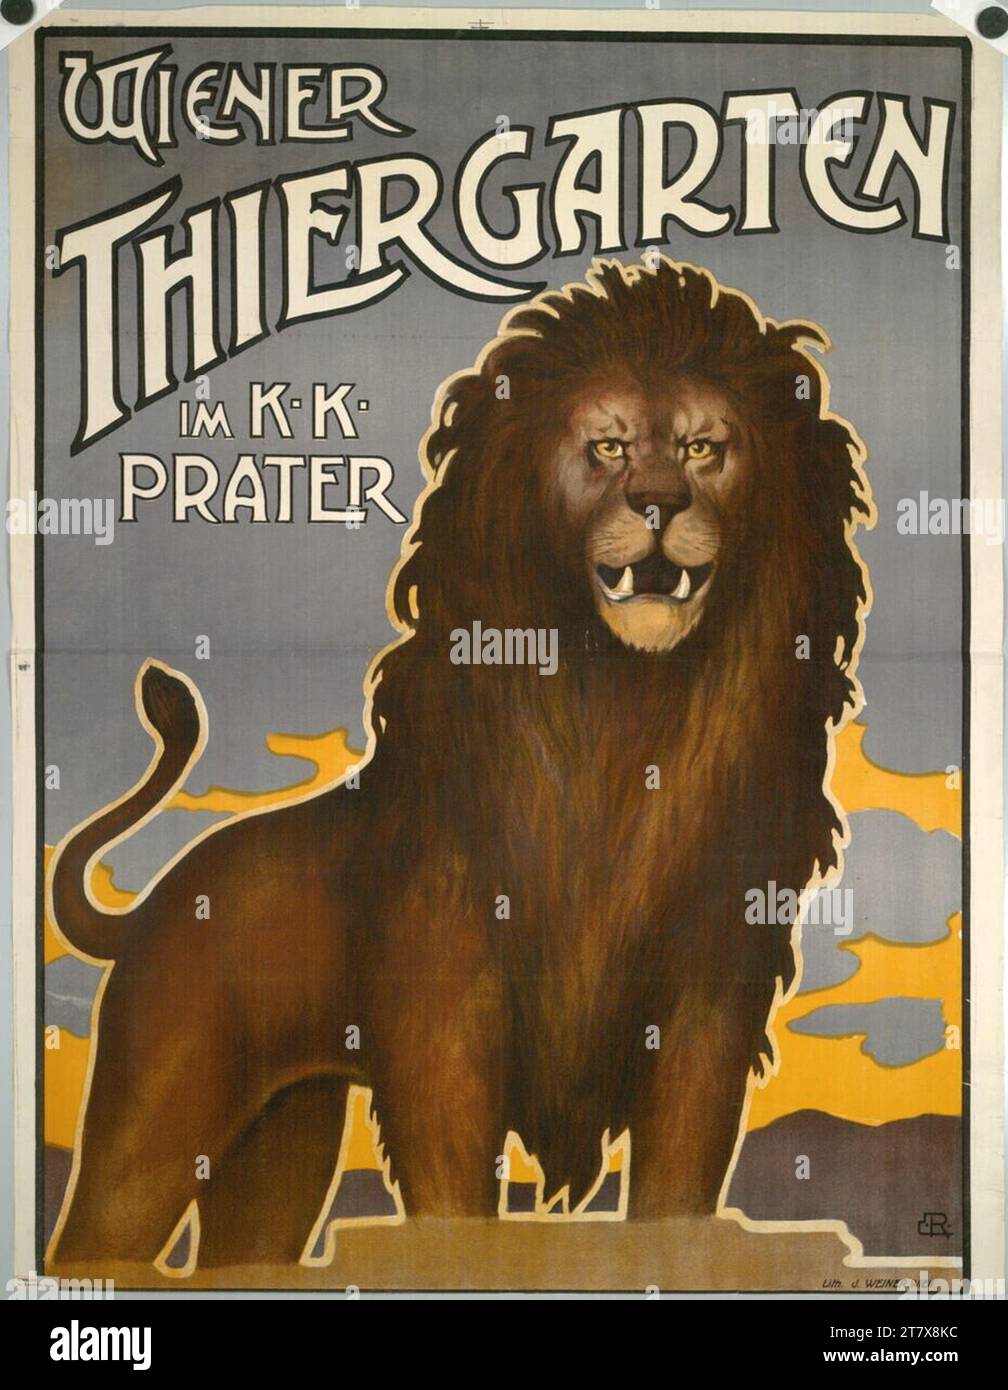 Emil Ranzenhofer Wiener Thiergarten in the K.K. Prater. Color around 1910 Stock Photo